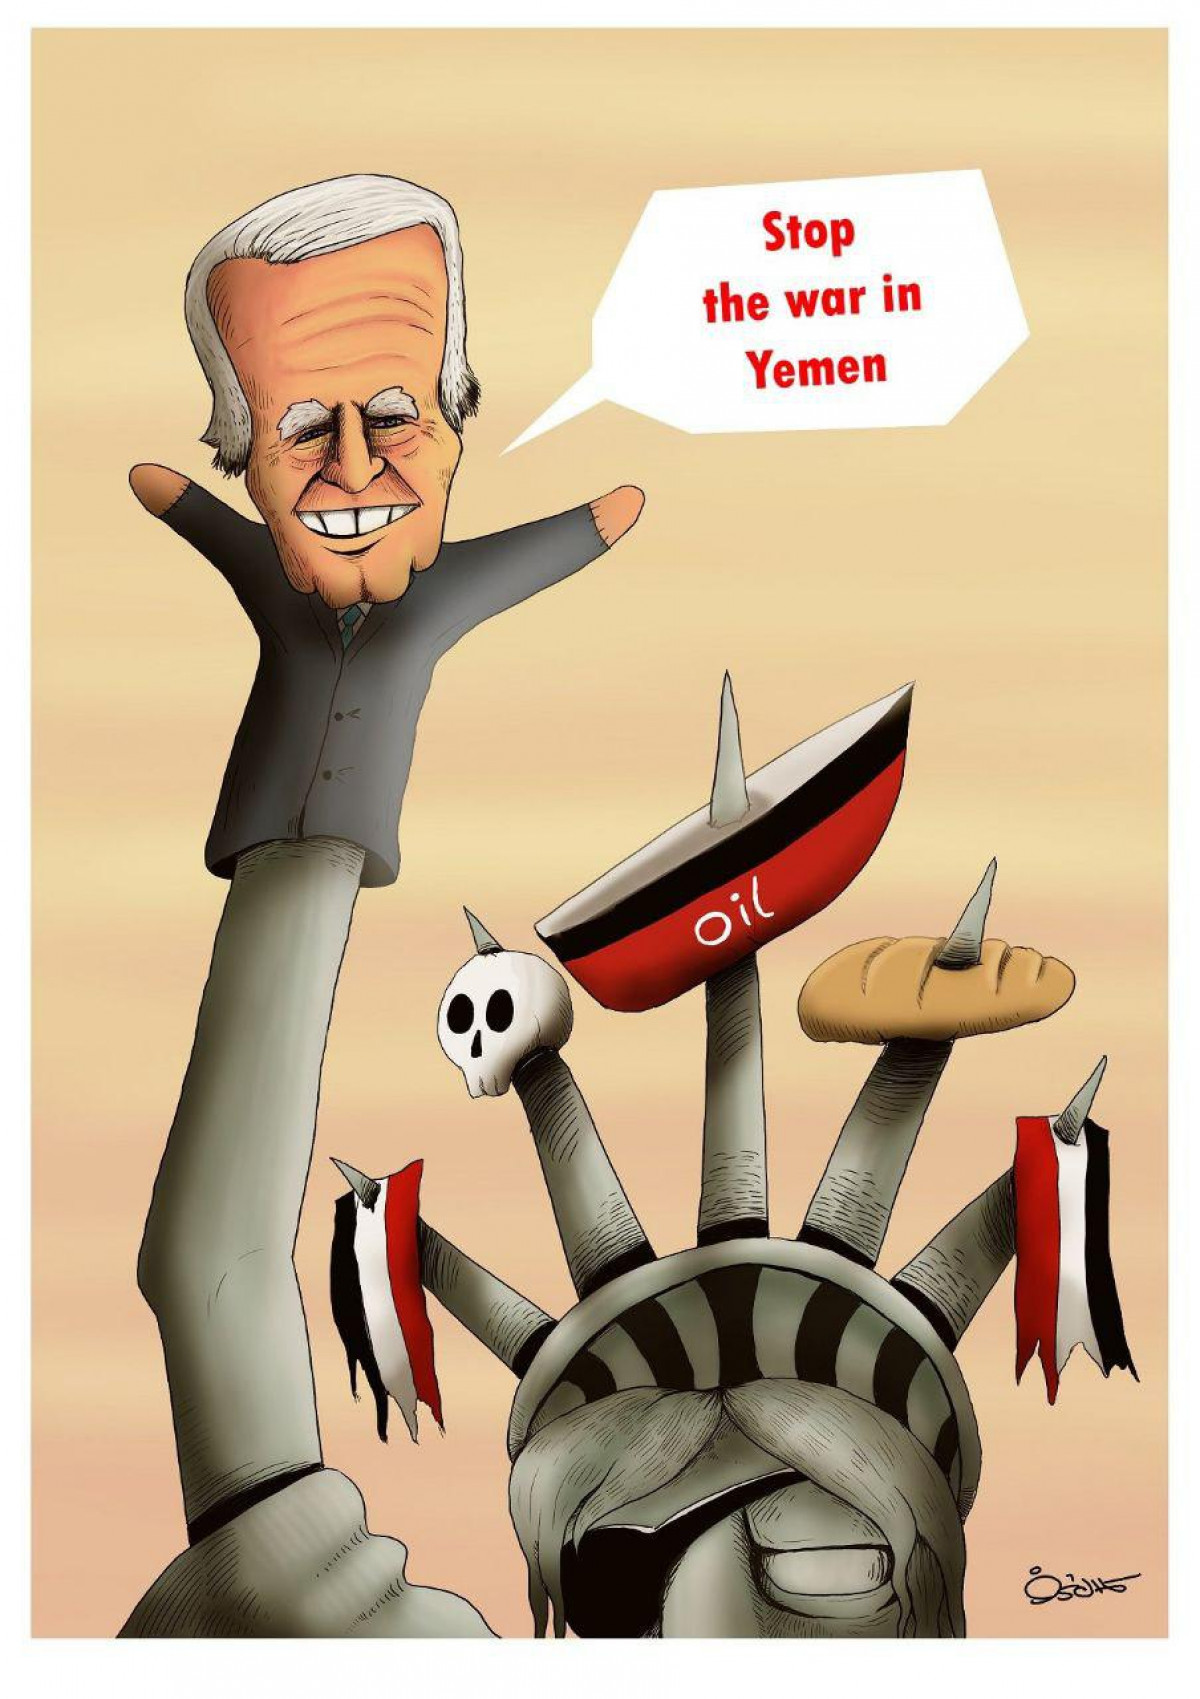 Stop the war in Yemen